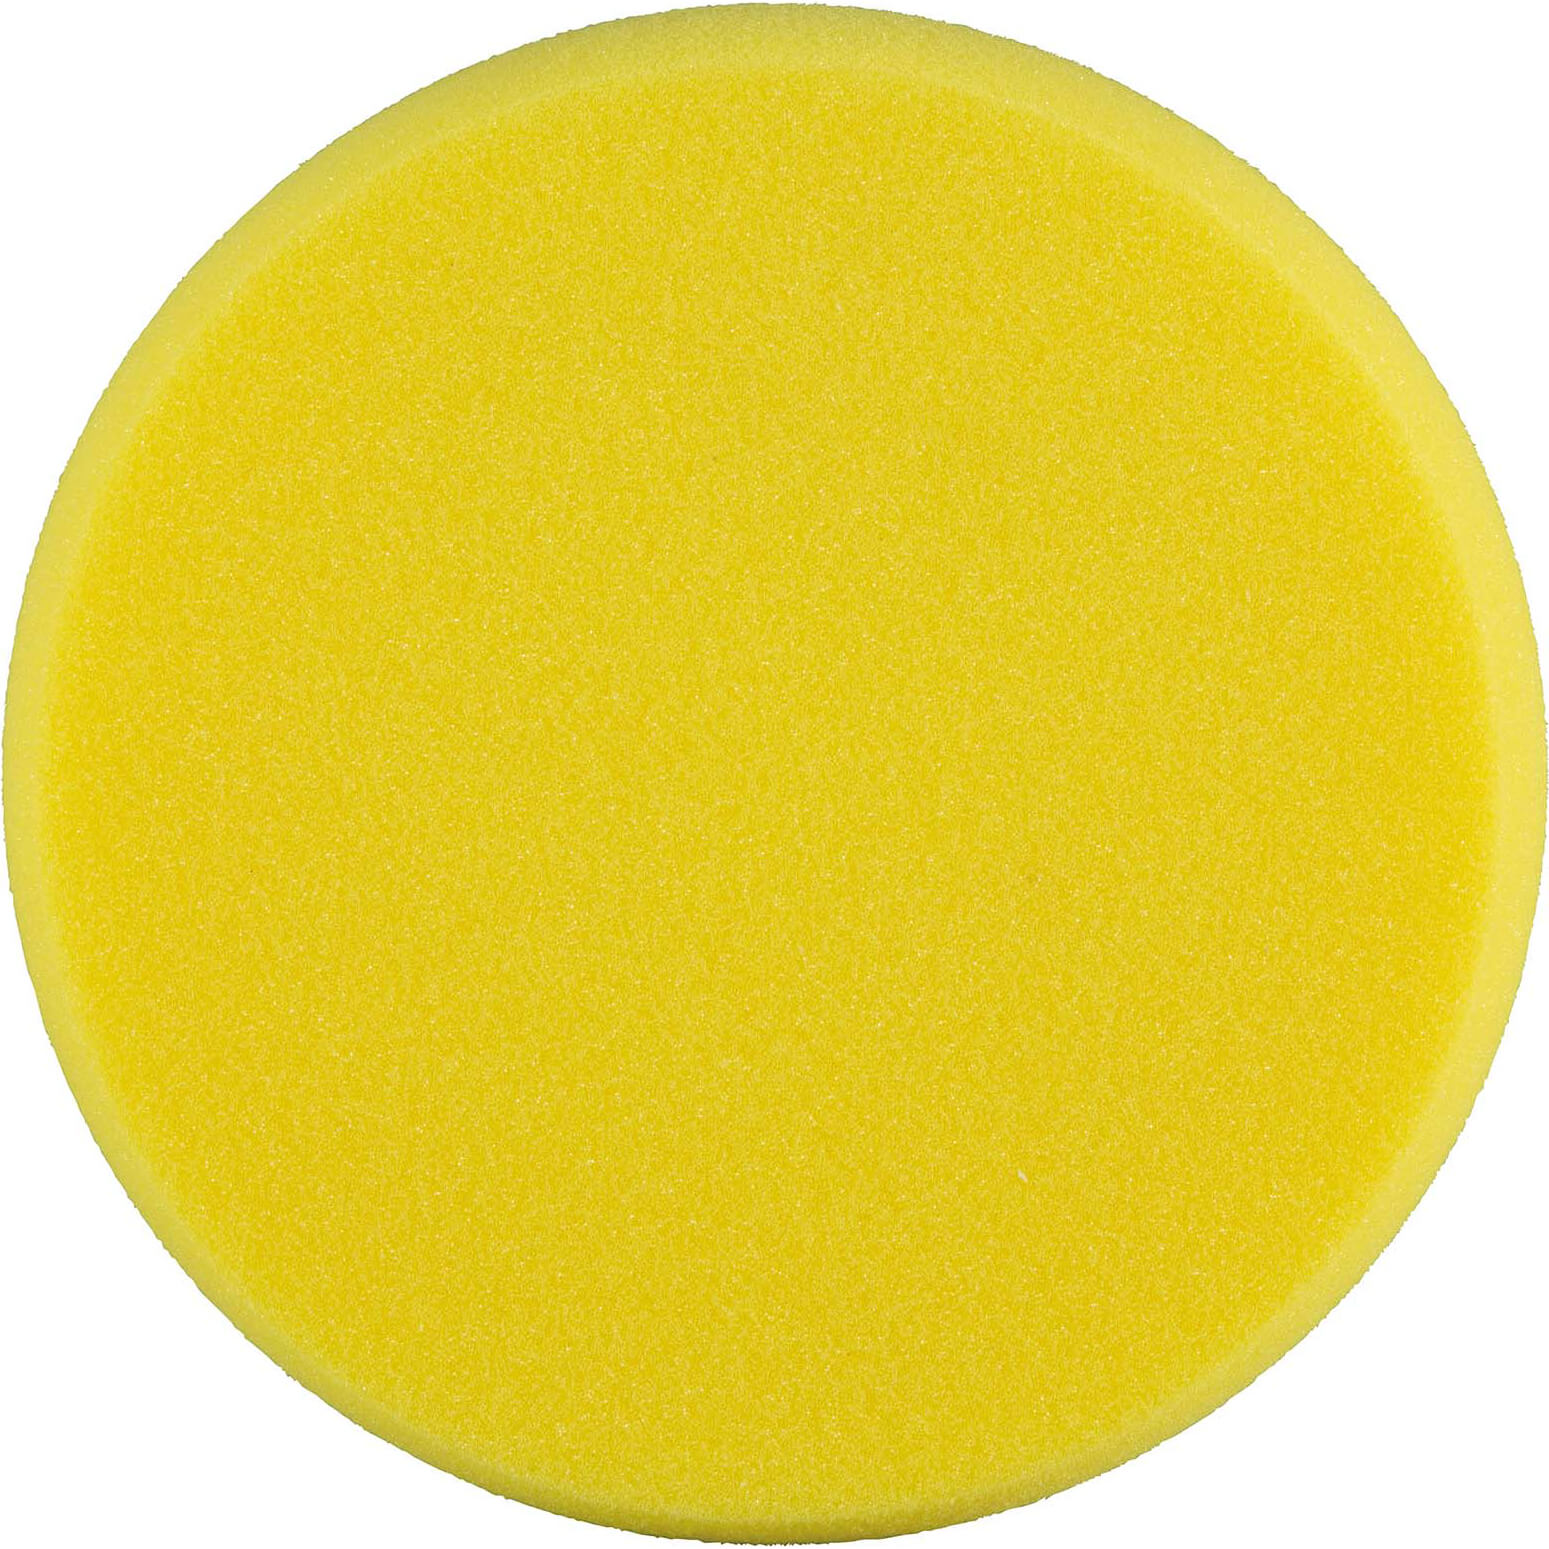 Image of Makita Yellow Polisher Sponge Pad 150mm